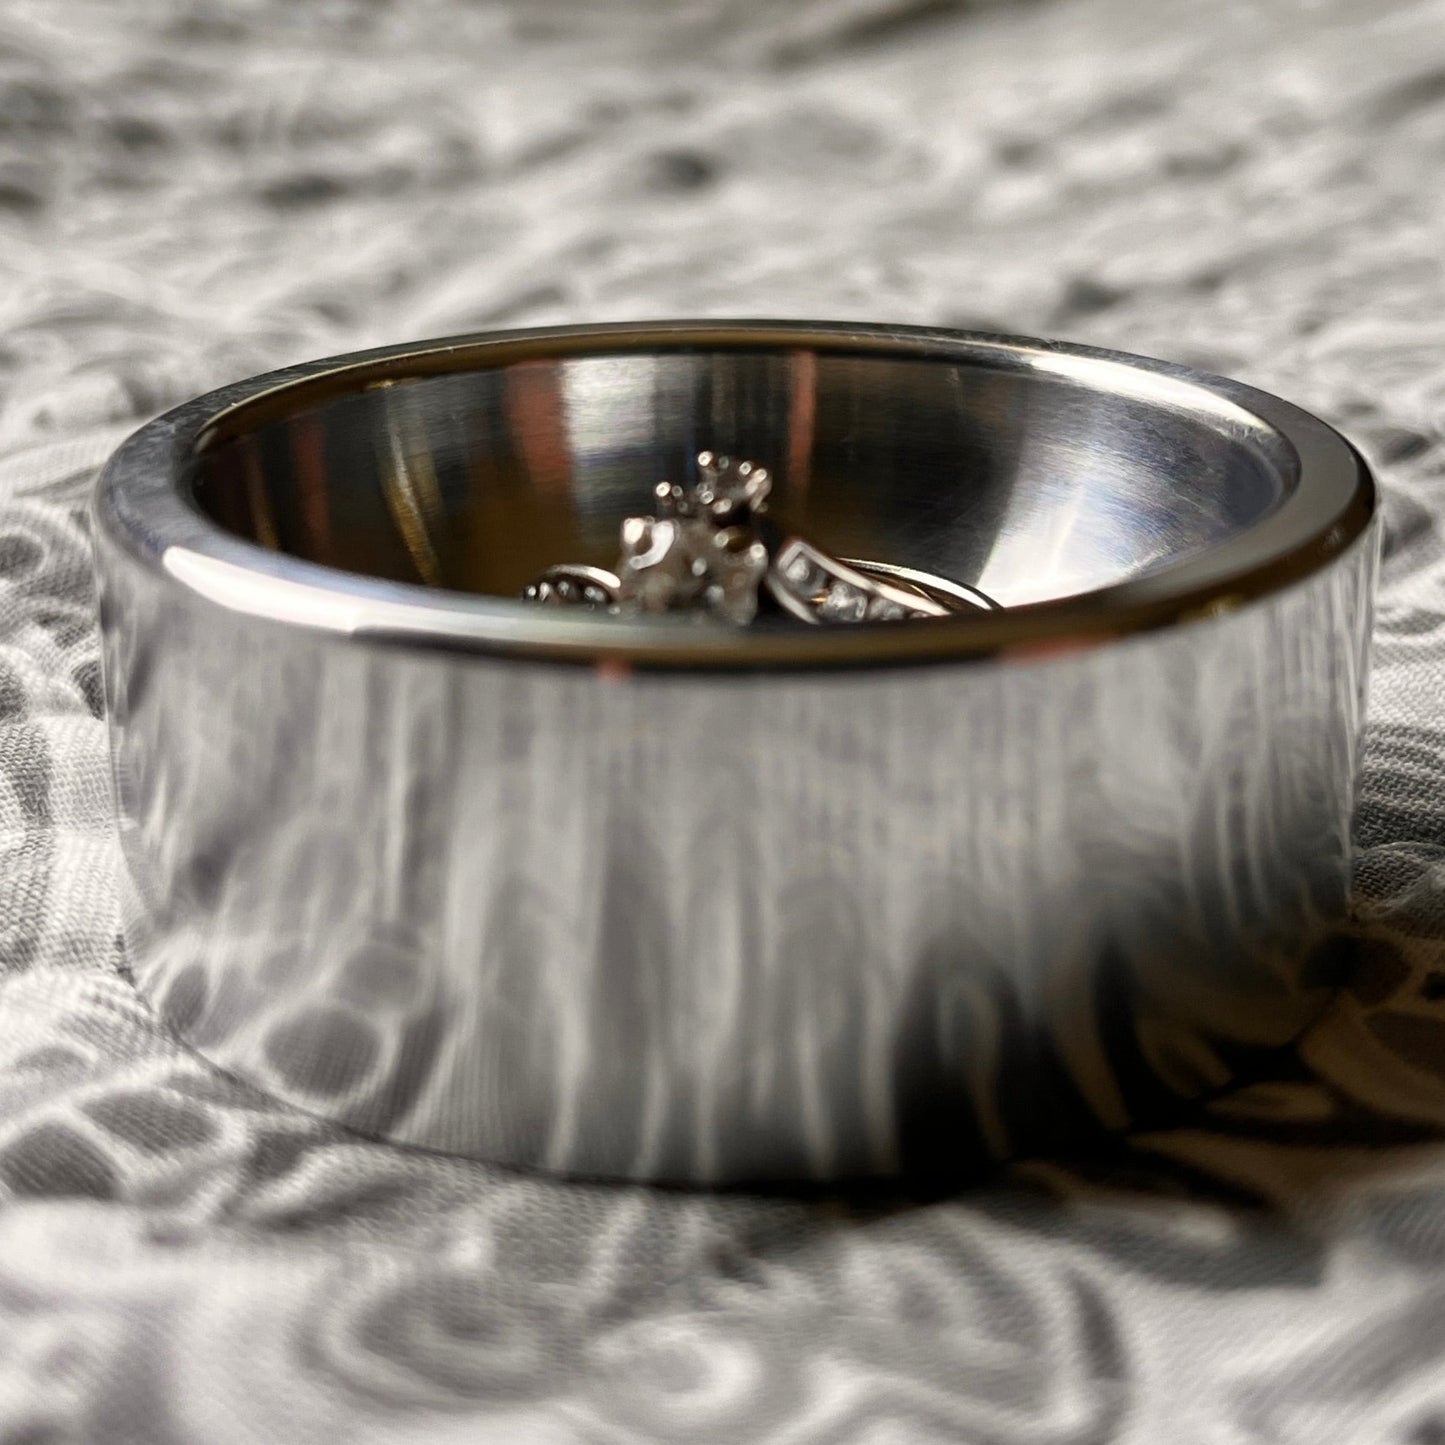 OA2AL KAC Aluminum Ring Dish Jewelry Tray